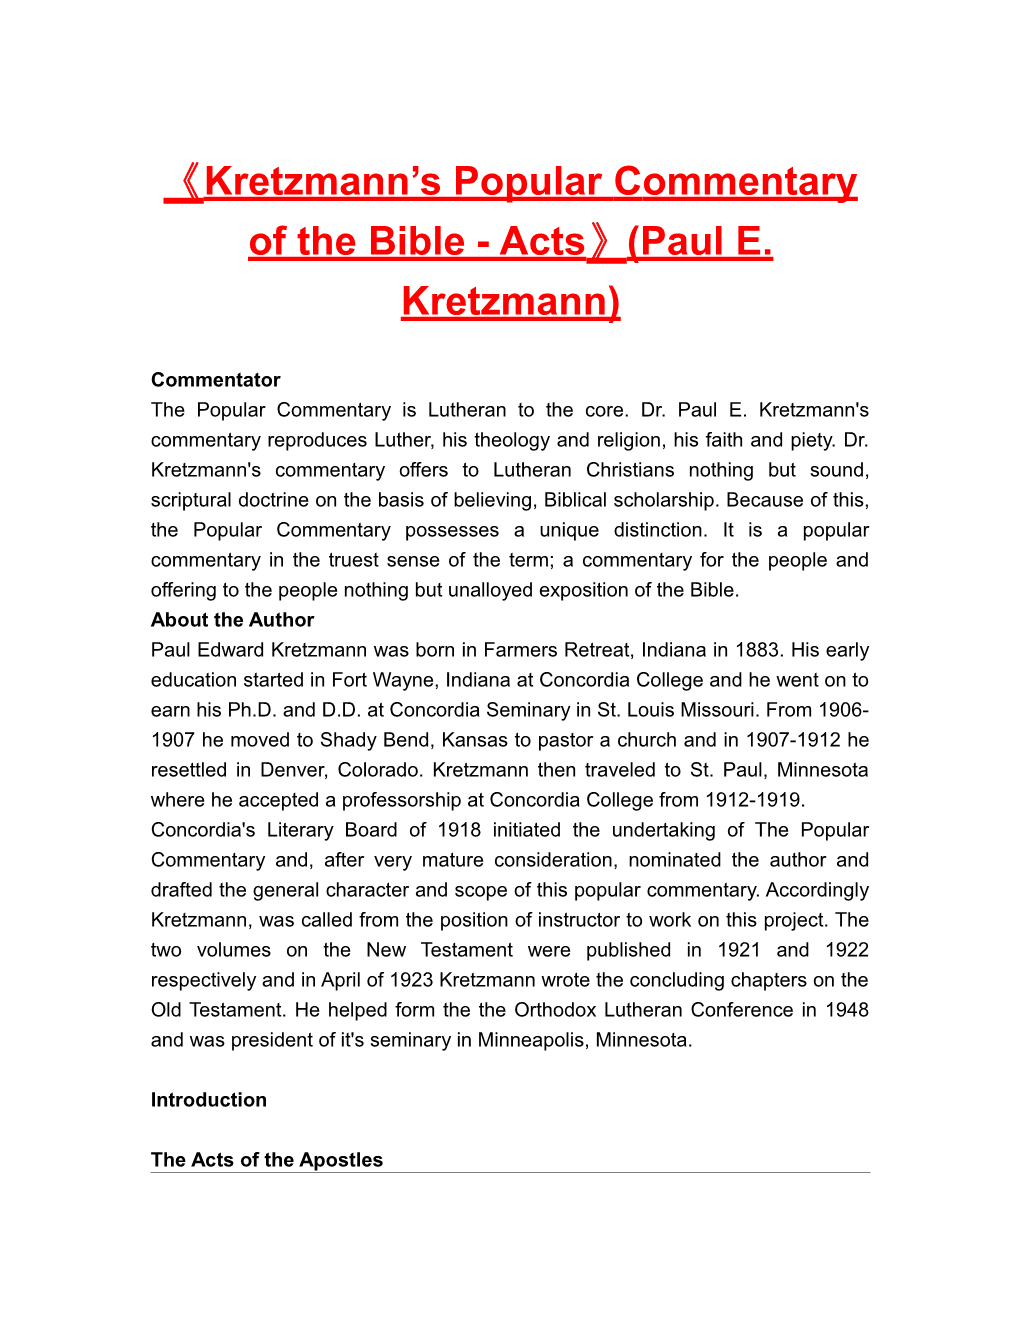 Kretzmann S Popular Commentary of the Bible - Acts (Paul E. Kretzmann)